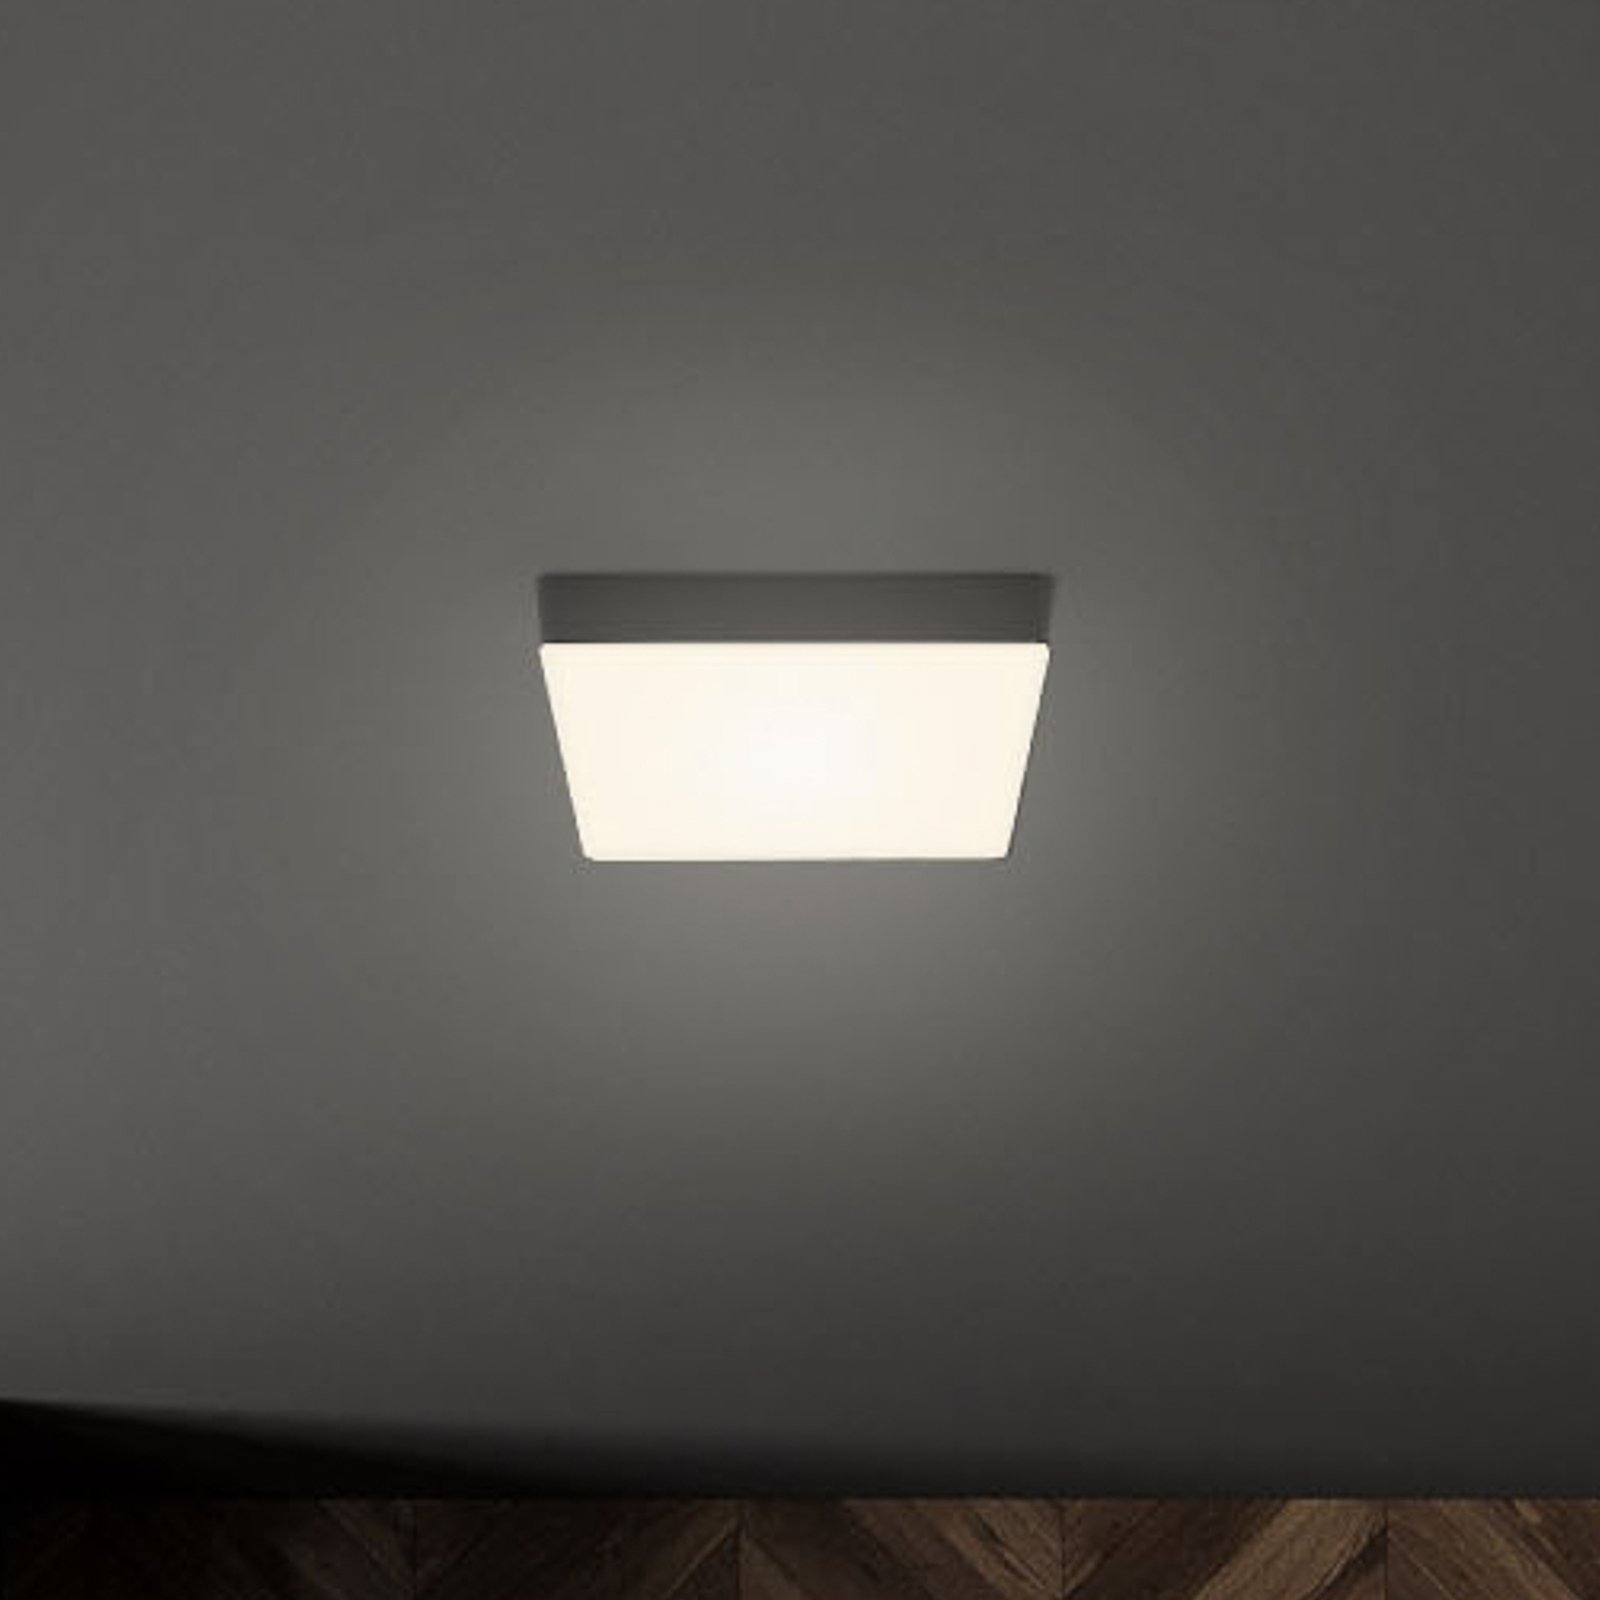 Plafonnier LED Flame, 15,7 x 15,7 cm, noir